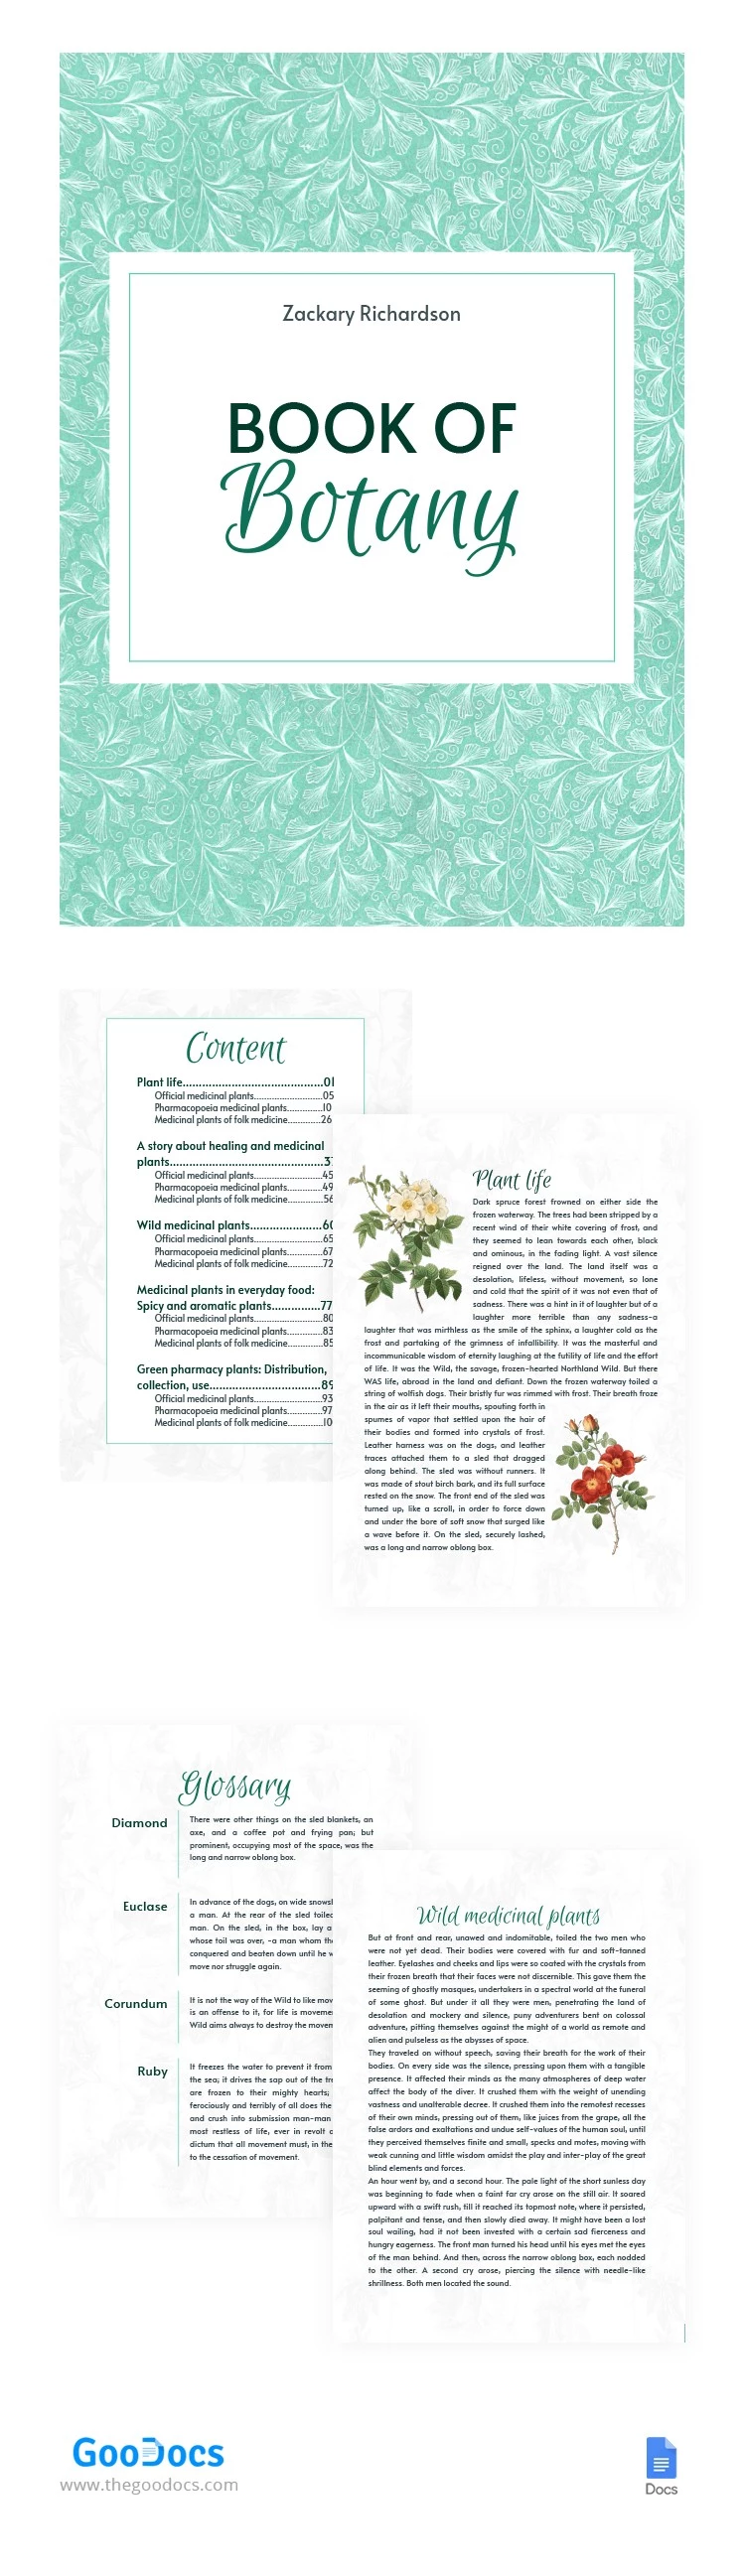 Portada de libro floral botánica - free Google Docs Template - 10065057